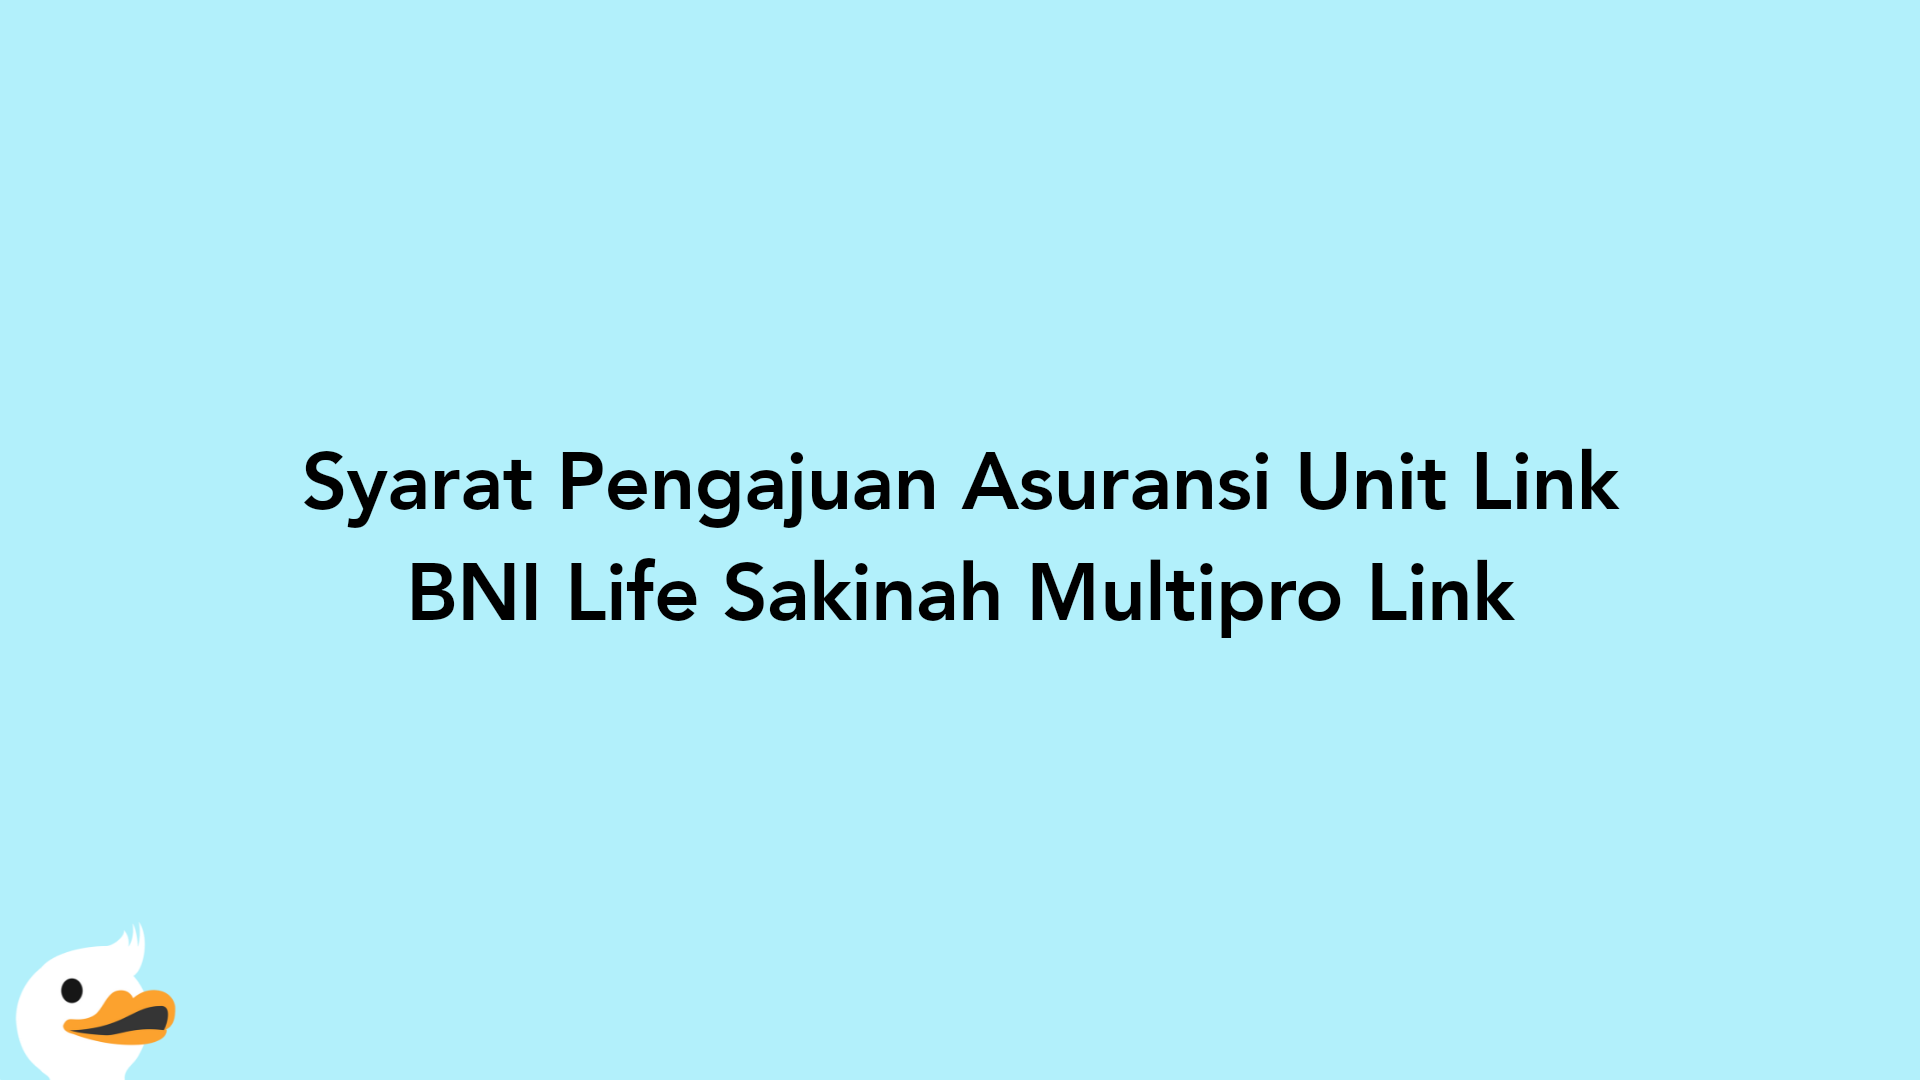 Syarat Pengajuan Asuransi Unit Link BNI Life Sakinah Multipro Link